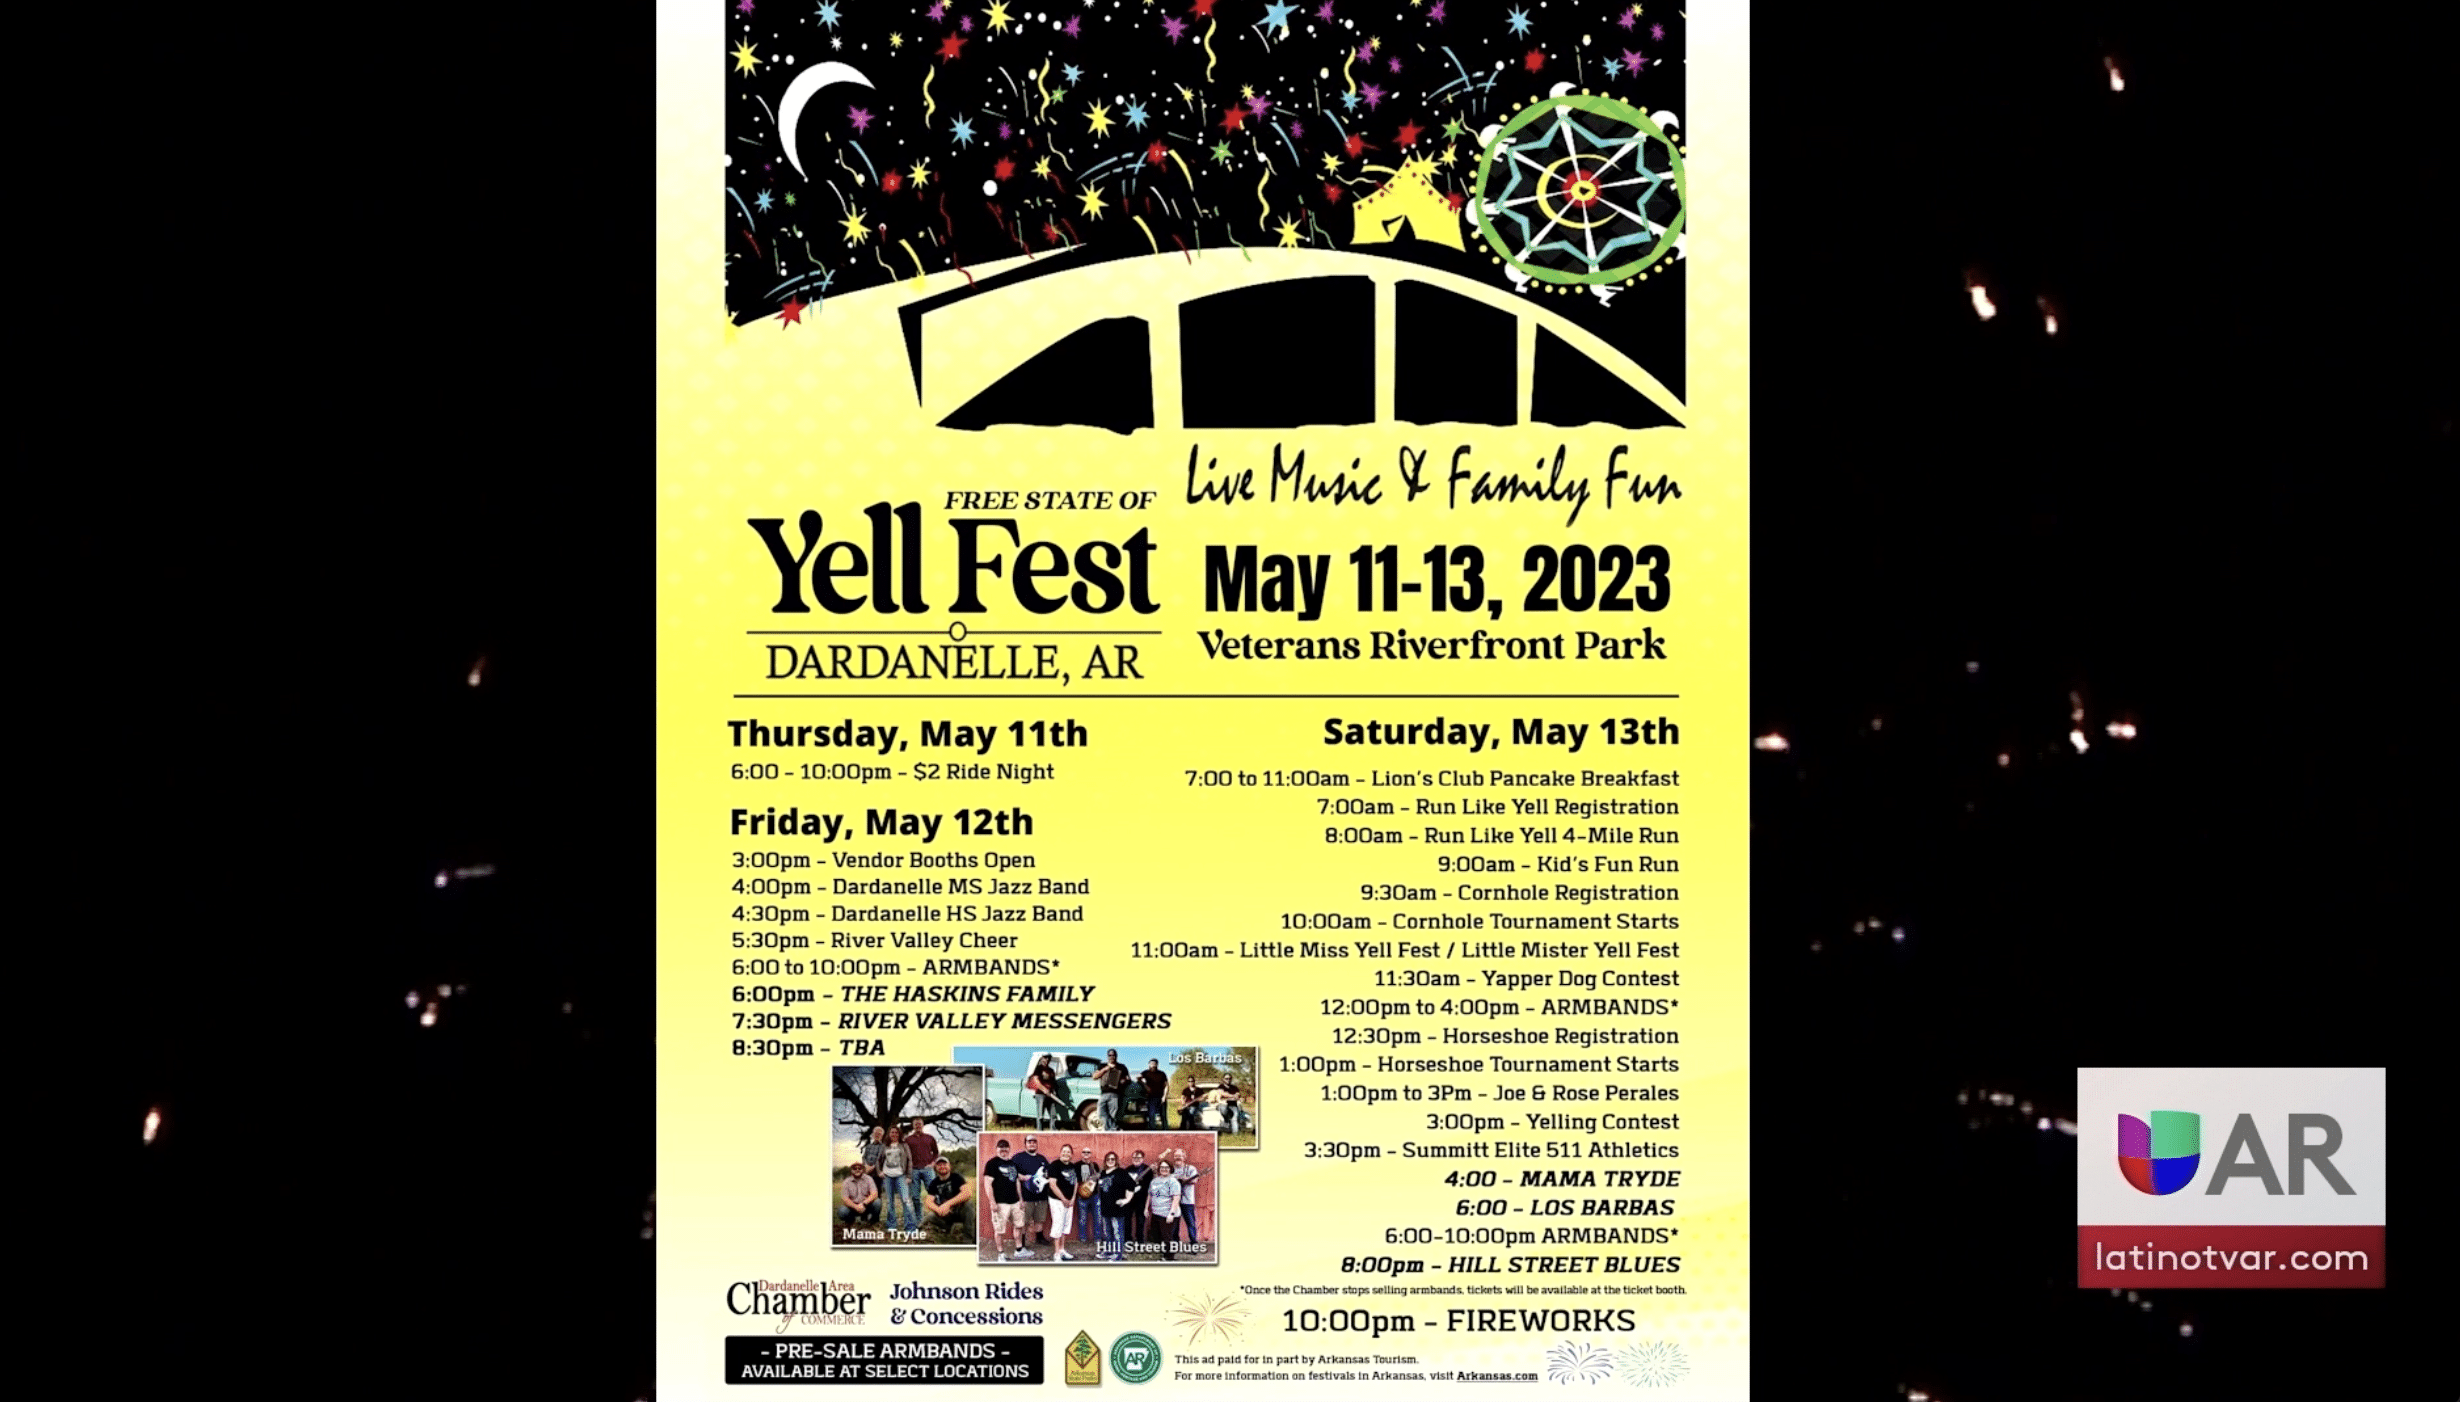 Llega el Yell Fest 2023 Univision Arkansas